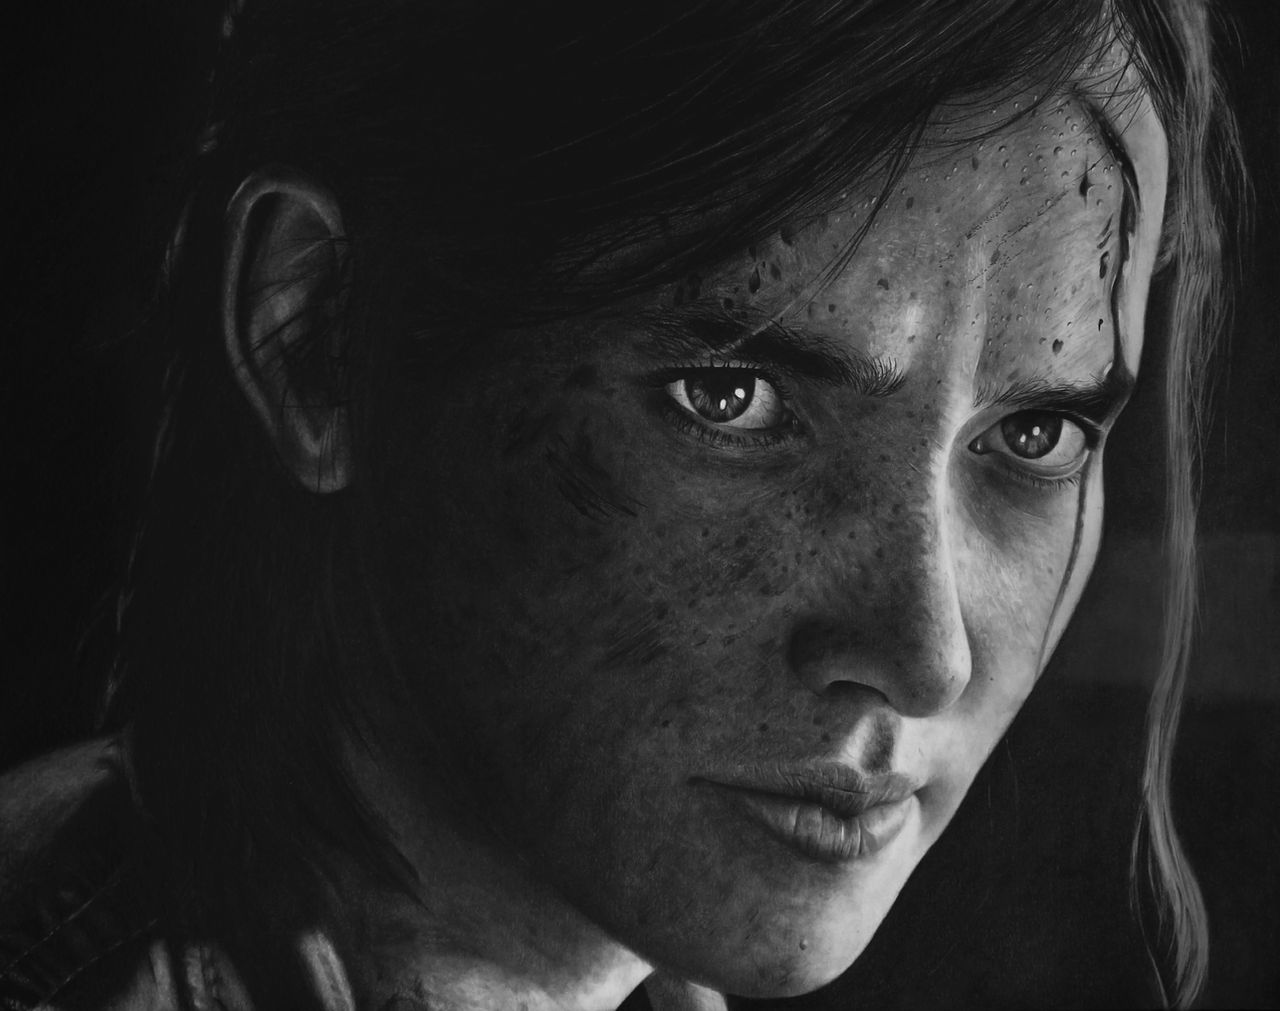 Ellie - The Last of Us 2 - Pencil Portrait